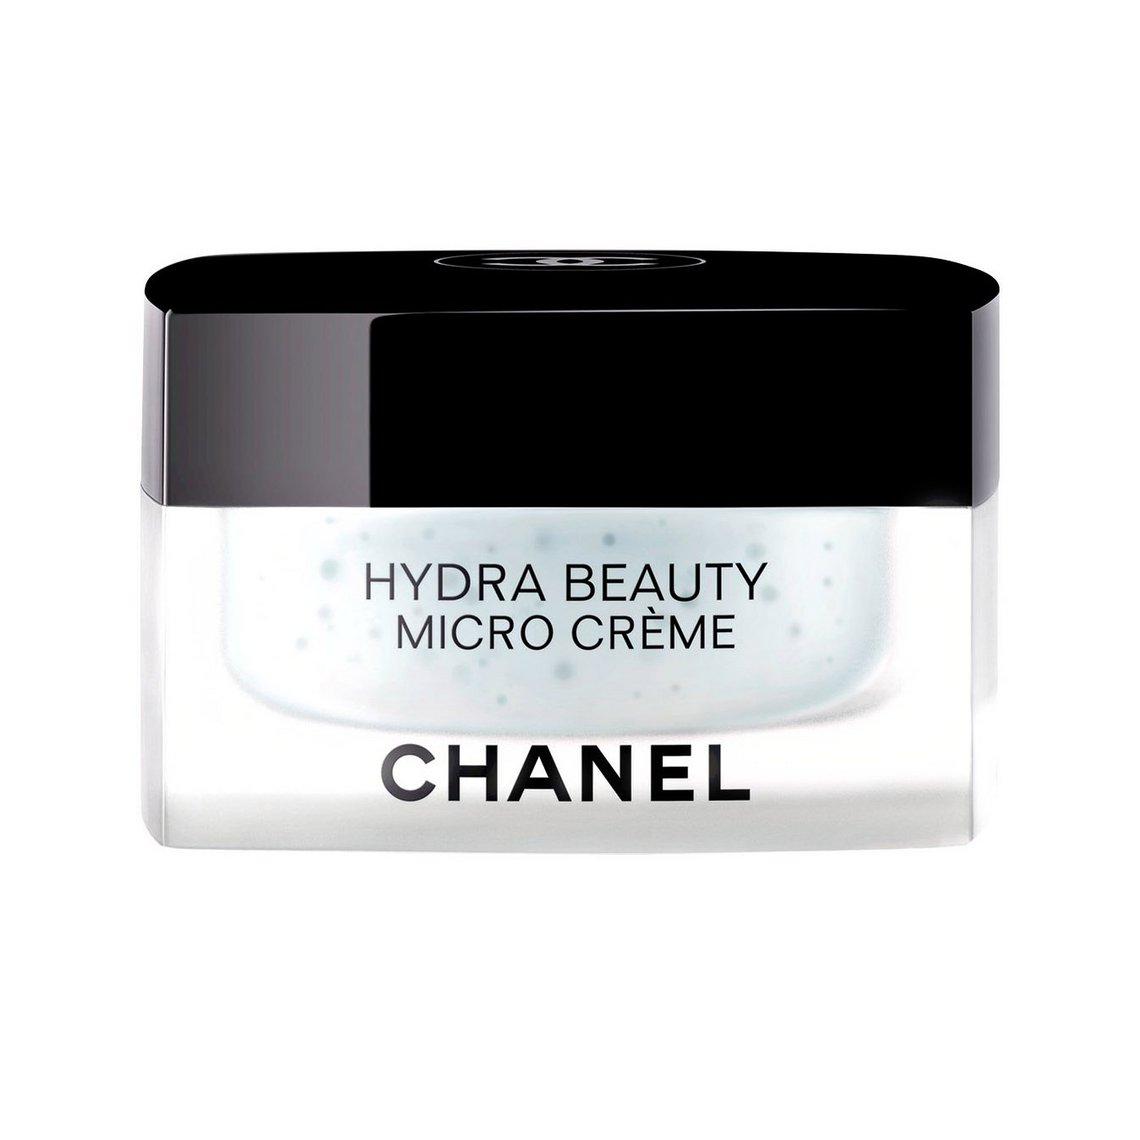 Hydra Beauty Micro Crème von Chanel